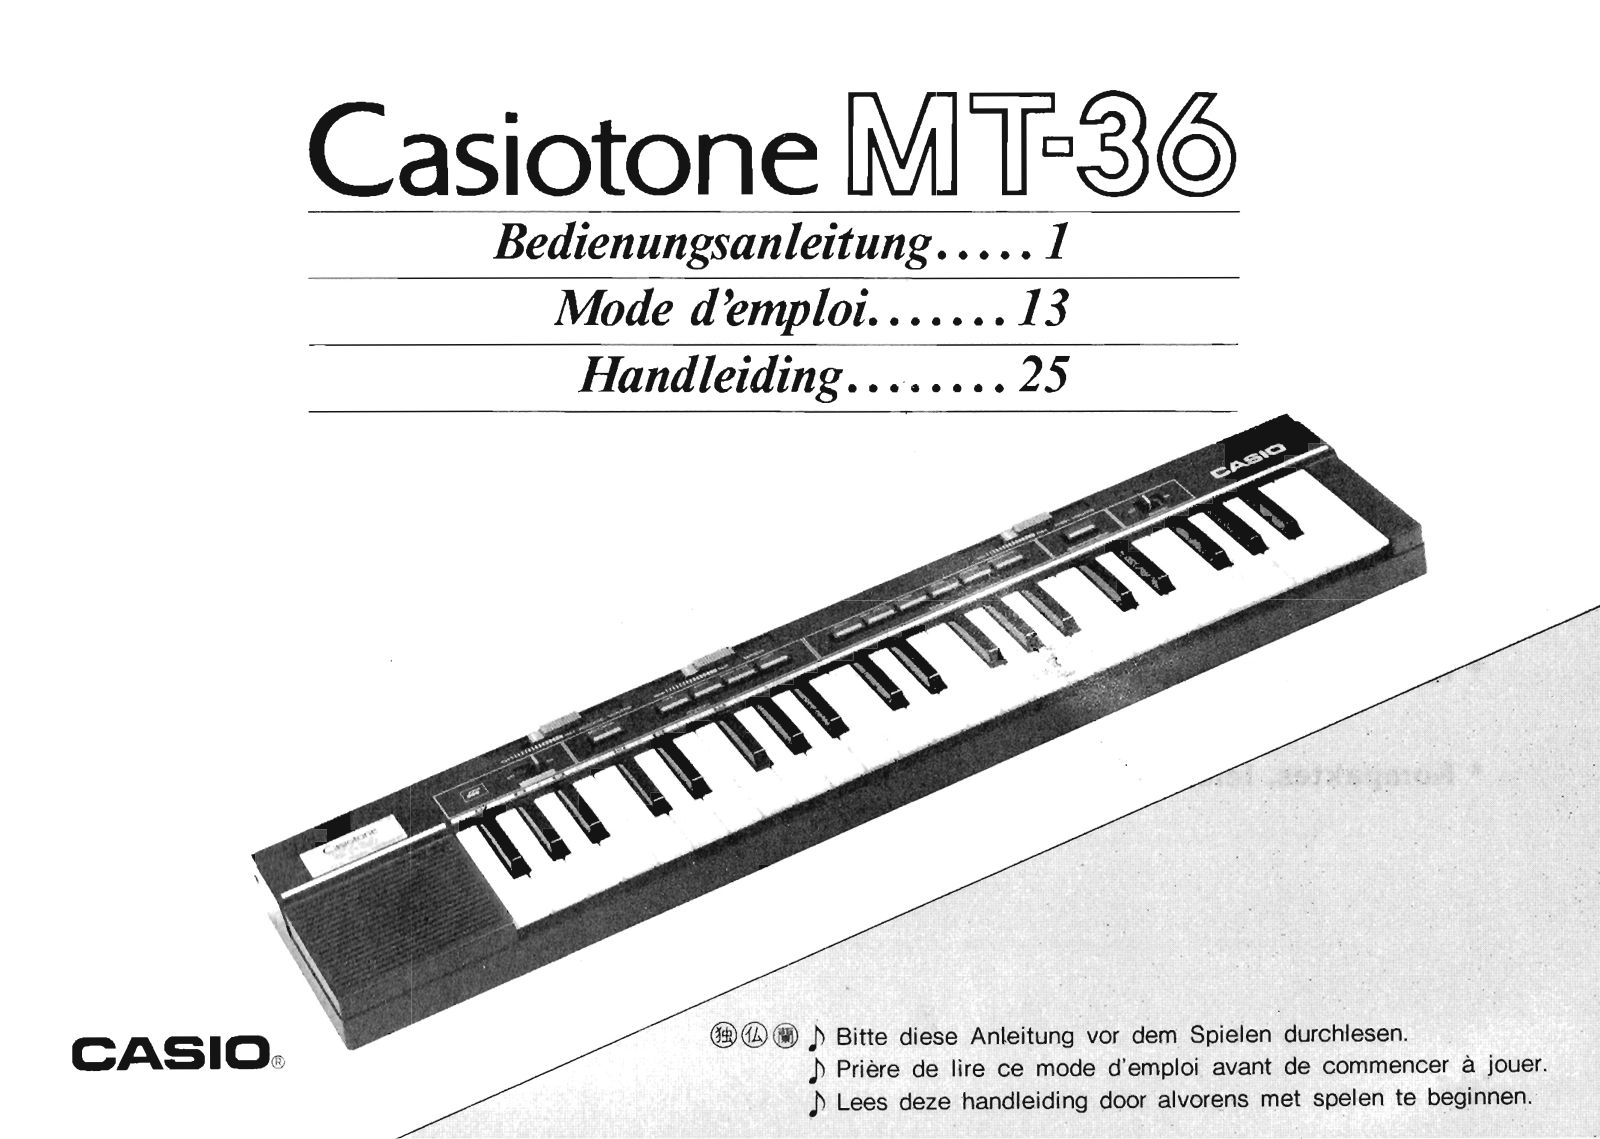 Casio MT-36 User Manual